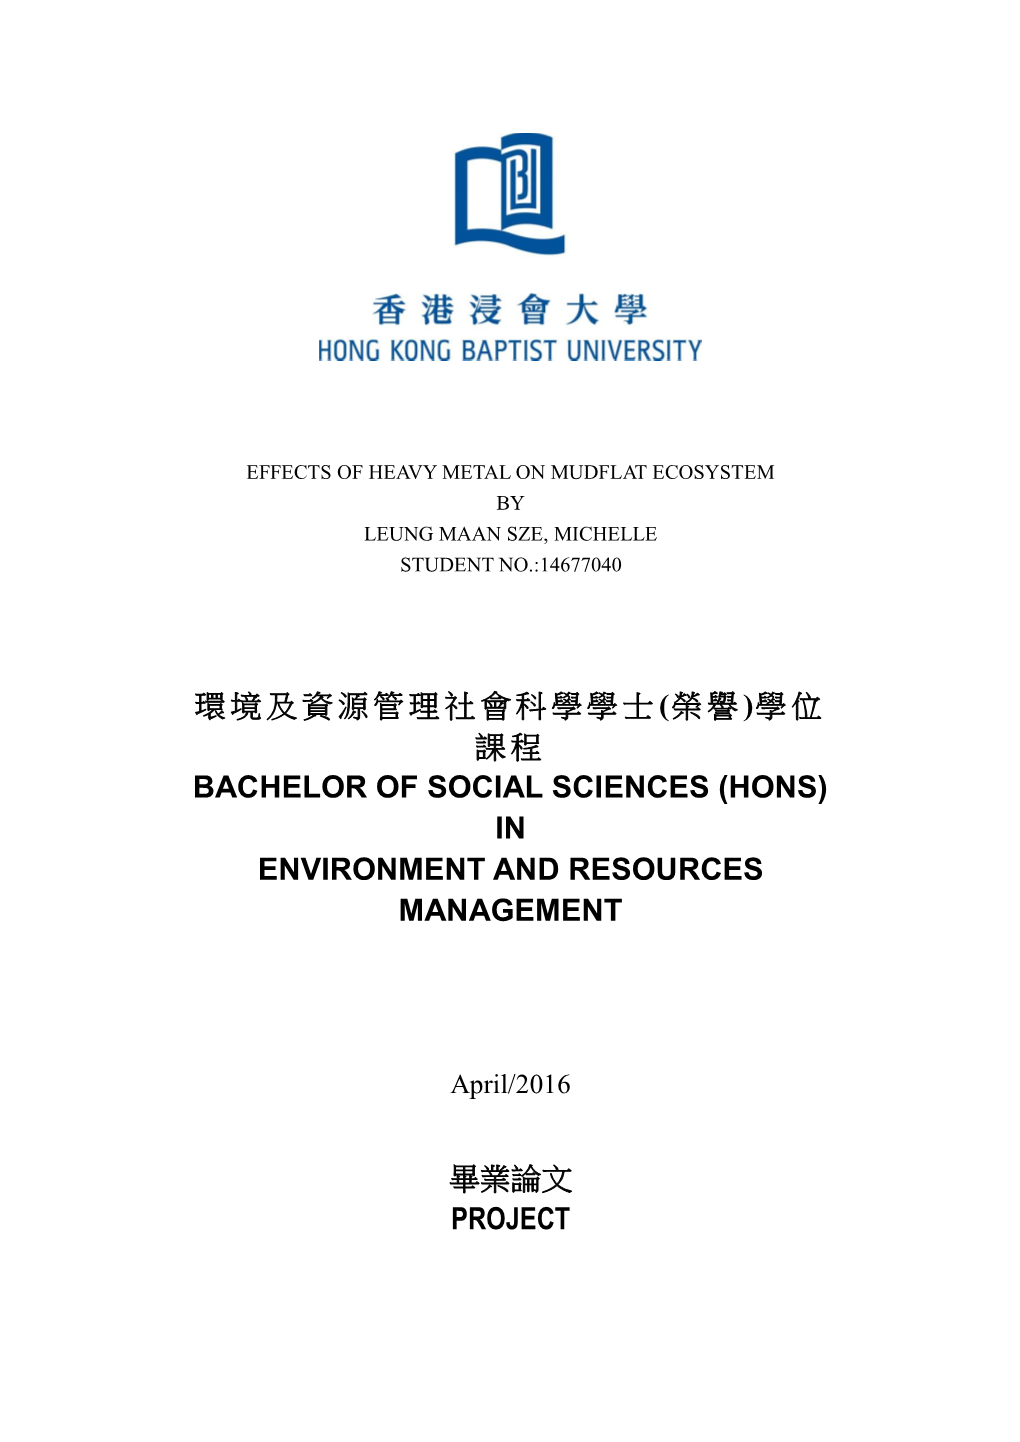 (榮譽)學位 課程 Bachelor of Social Sciences (Hons) in Environment and Resources Management